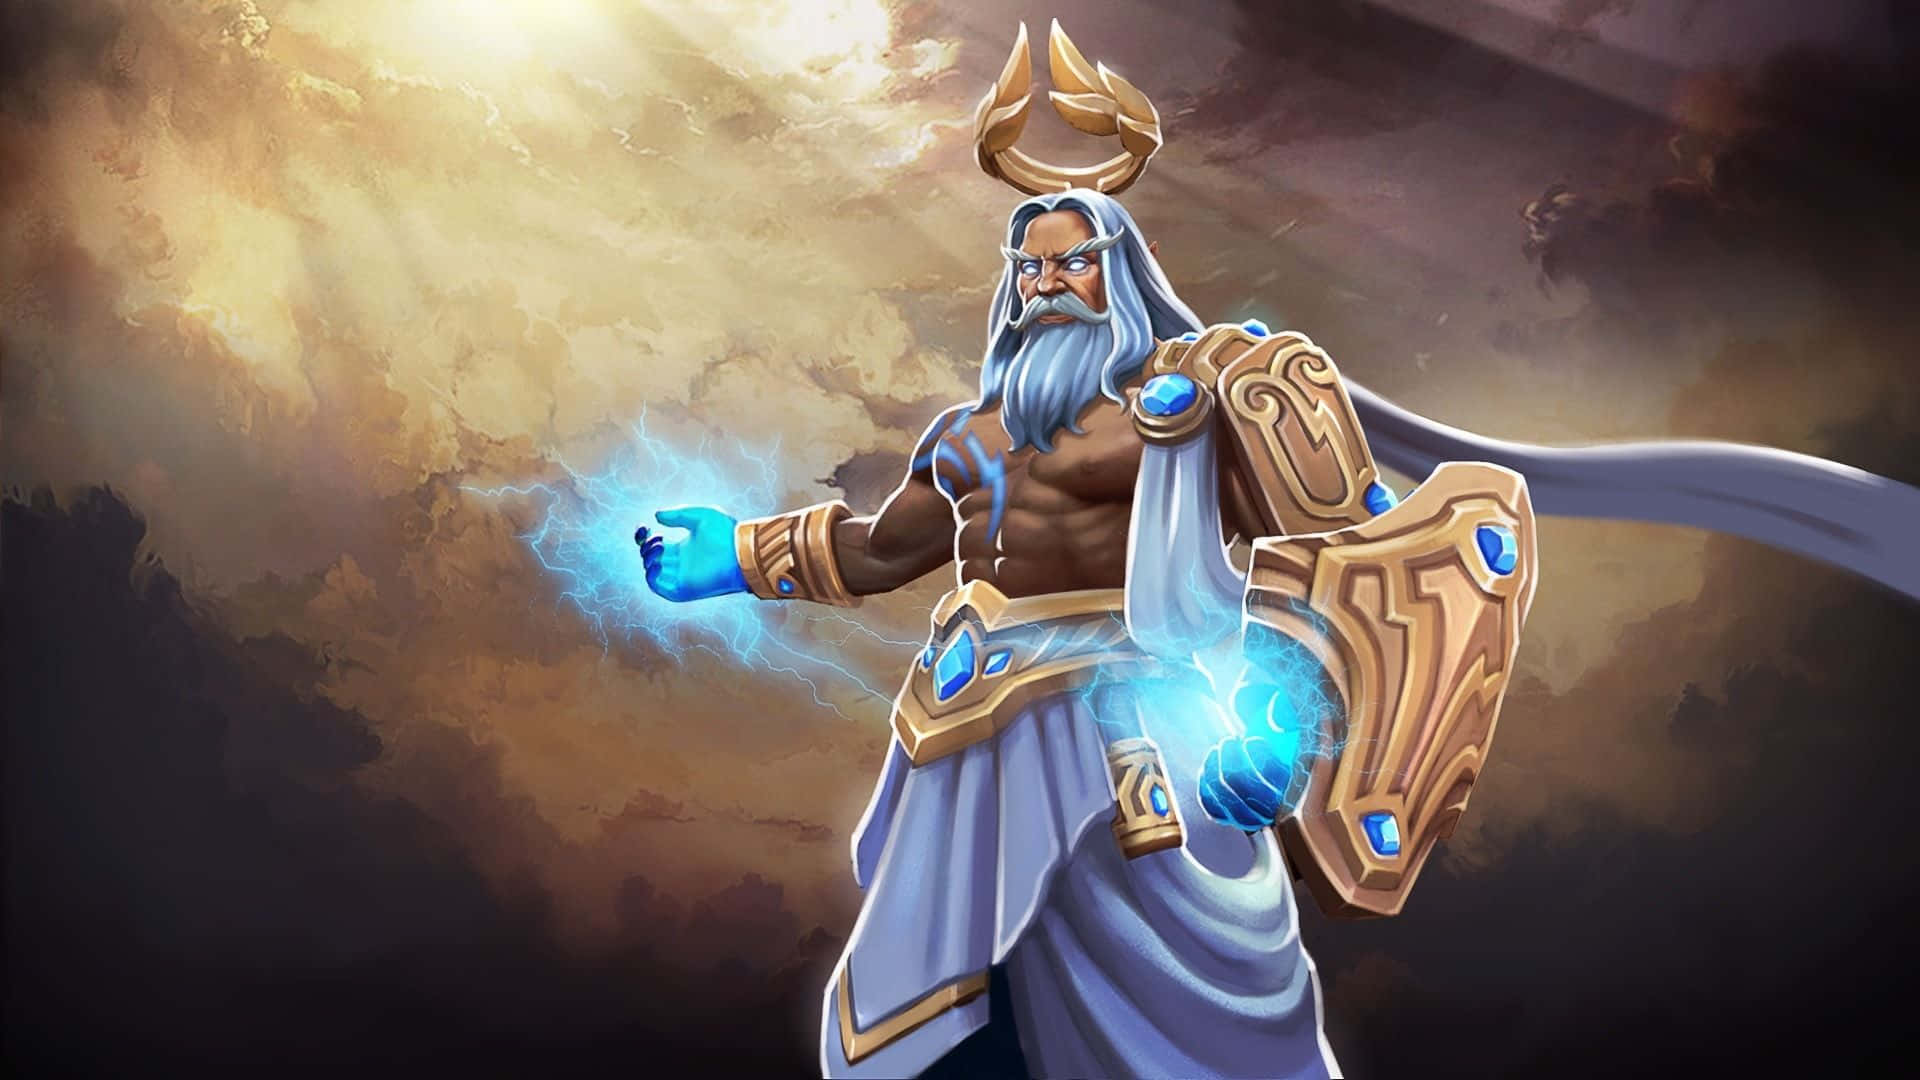 Dota 2 Zeus: The God of Thunder in Action Wallpaper